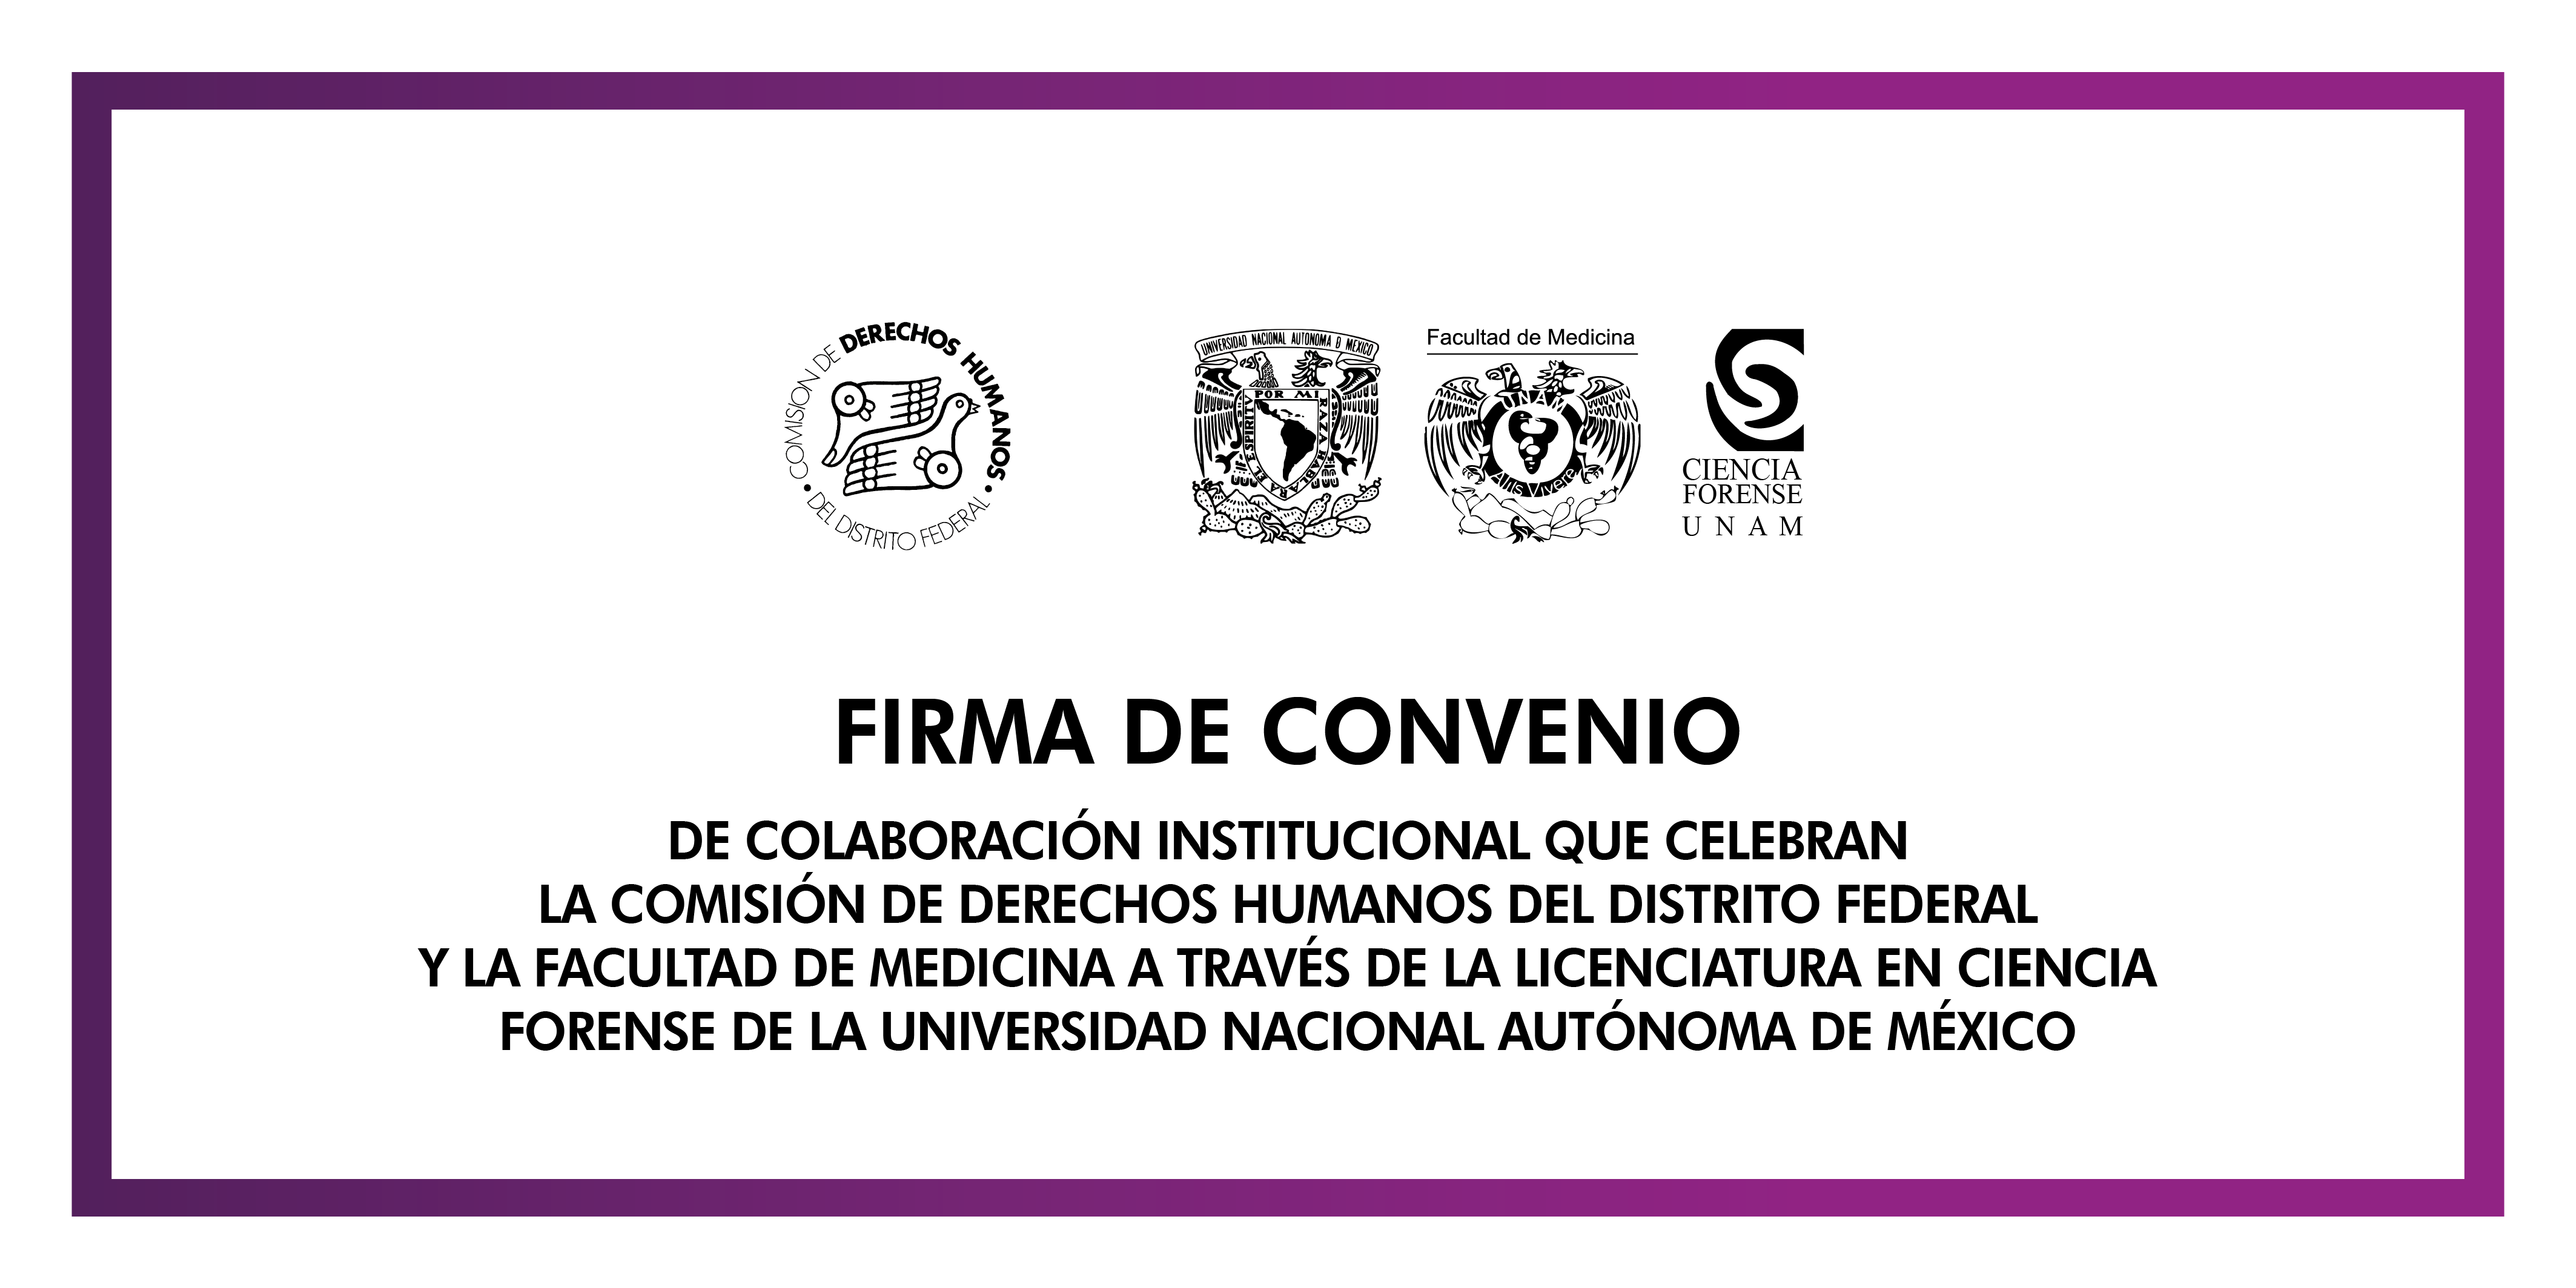 Firma de Convenio de Colaboración Institucional con la Facultad de Medicina, a través de la Licenciatura en Ciencia Forense, de la UNAM. @ CDHDF